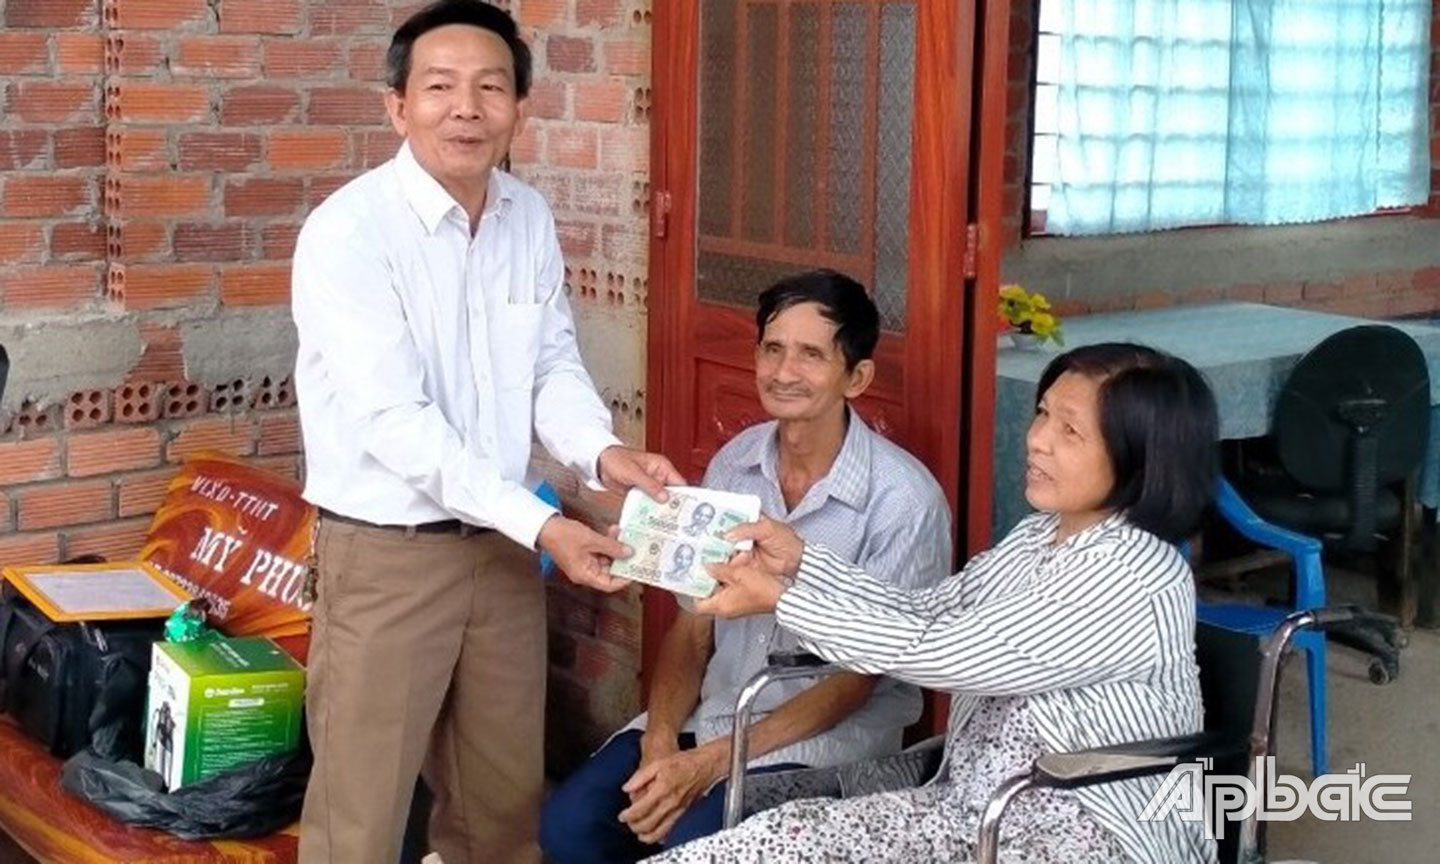 Phó Chủ tịch Hội NNCĐDC huyện Tân Phước Nguyễn Văn Tám trao tiền xây dựng “Mái ấm da cam” của nhà tài trợ cho NNCĐDC Bùi Thị Diễm Phượng ở xã Tân Hòa Tây.